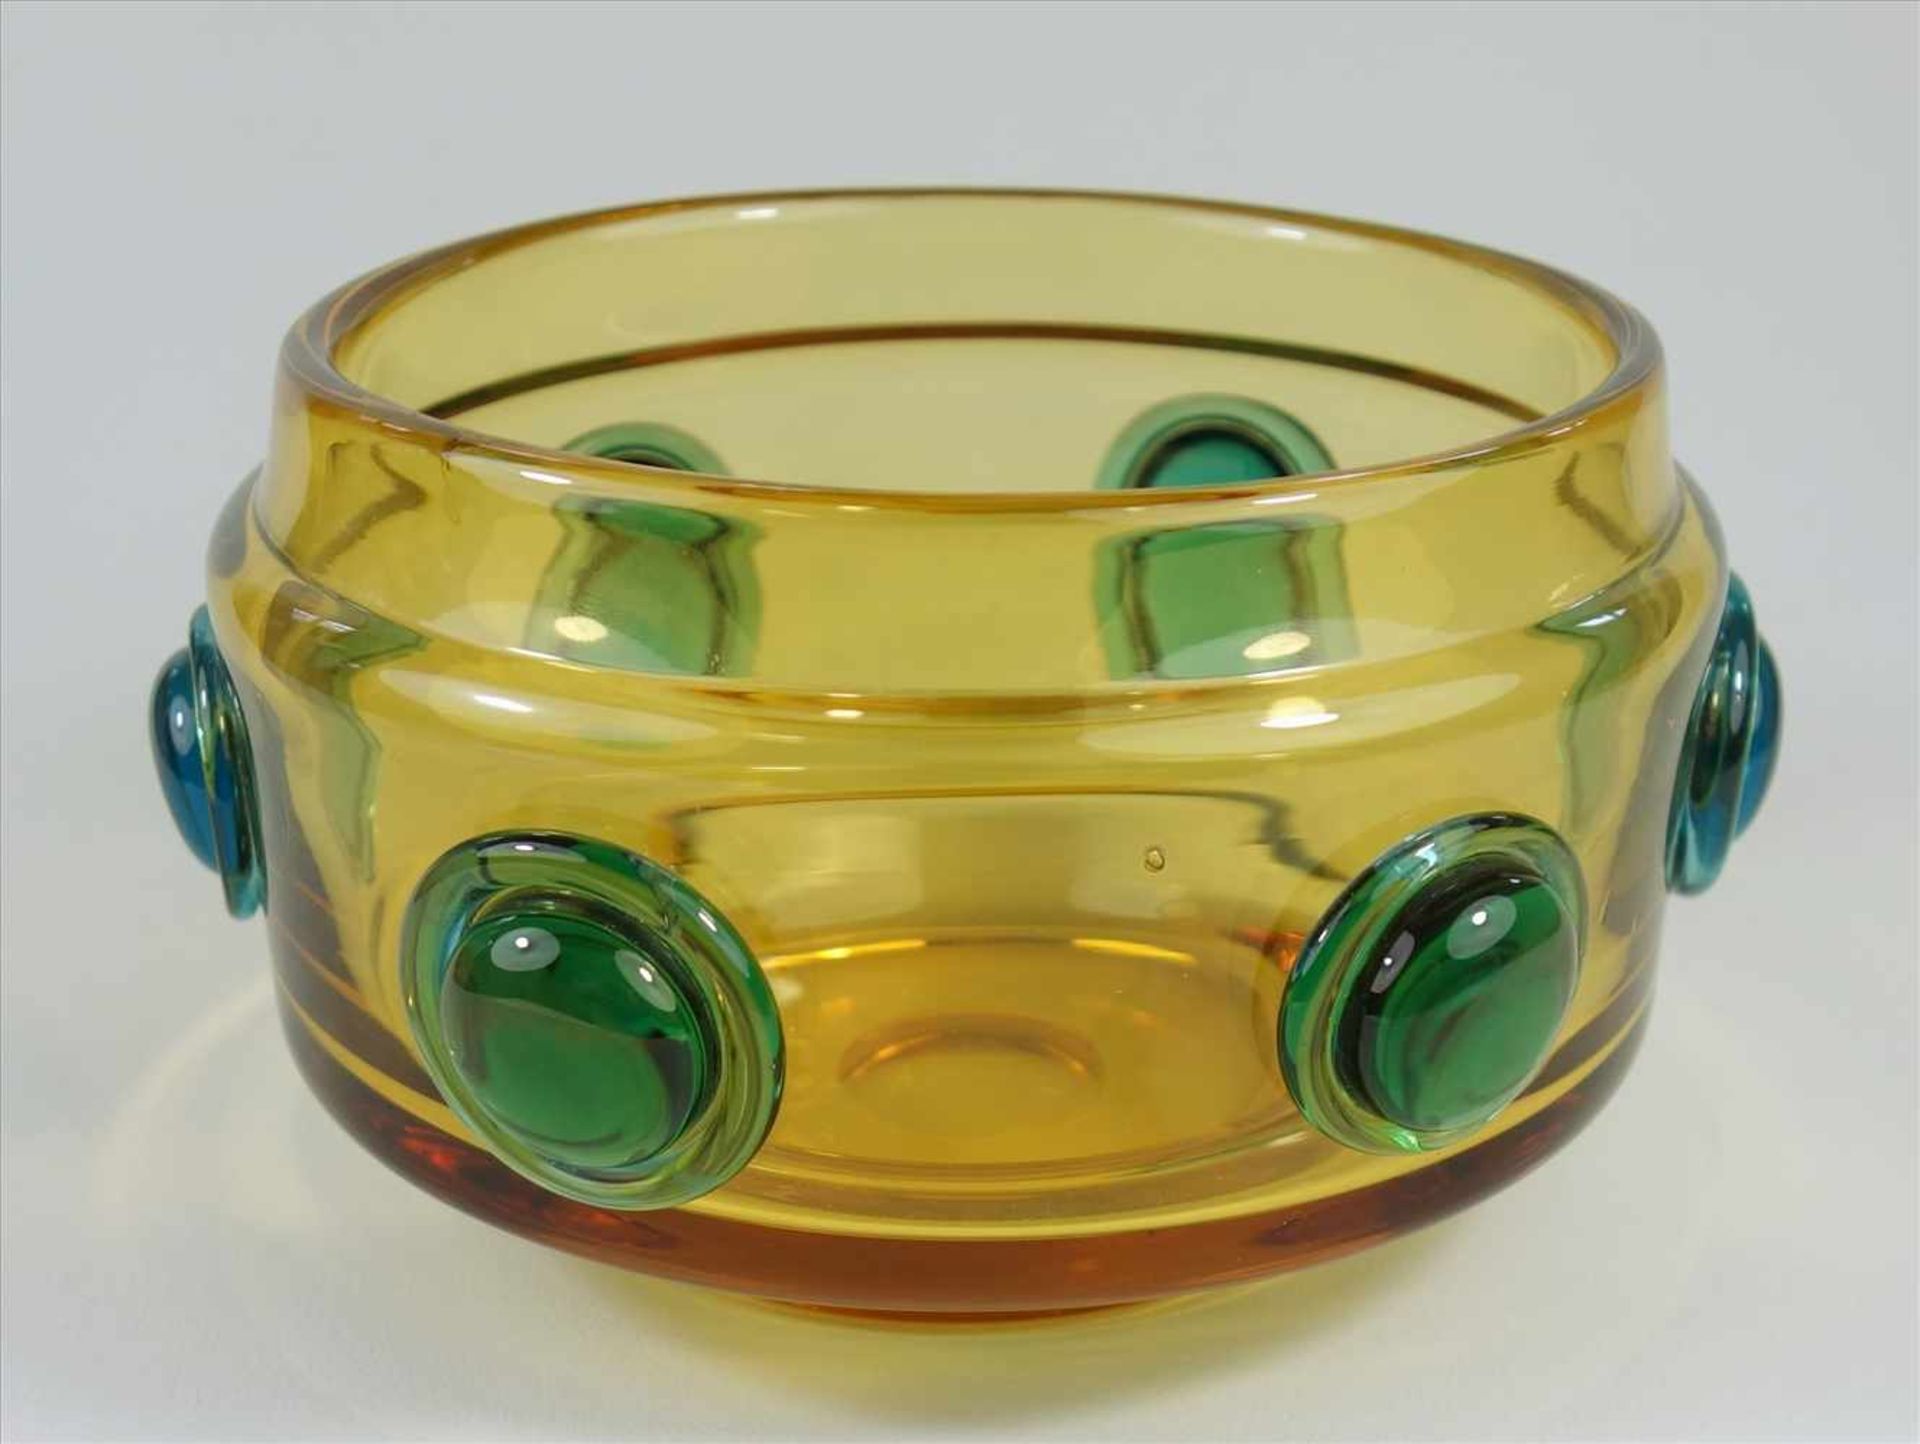 Glasschale mit grünen Aufschmelzungen, 20er Jahre, undeutl. Ätzmarke CH?, bernsteinfarben, Stand mit